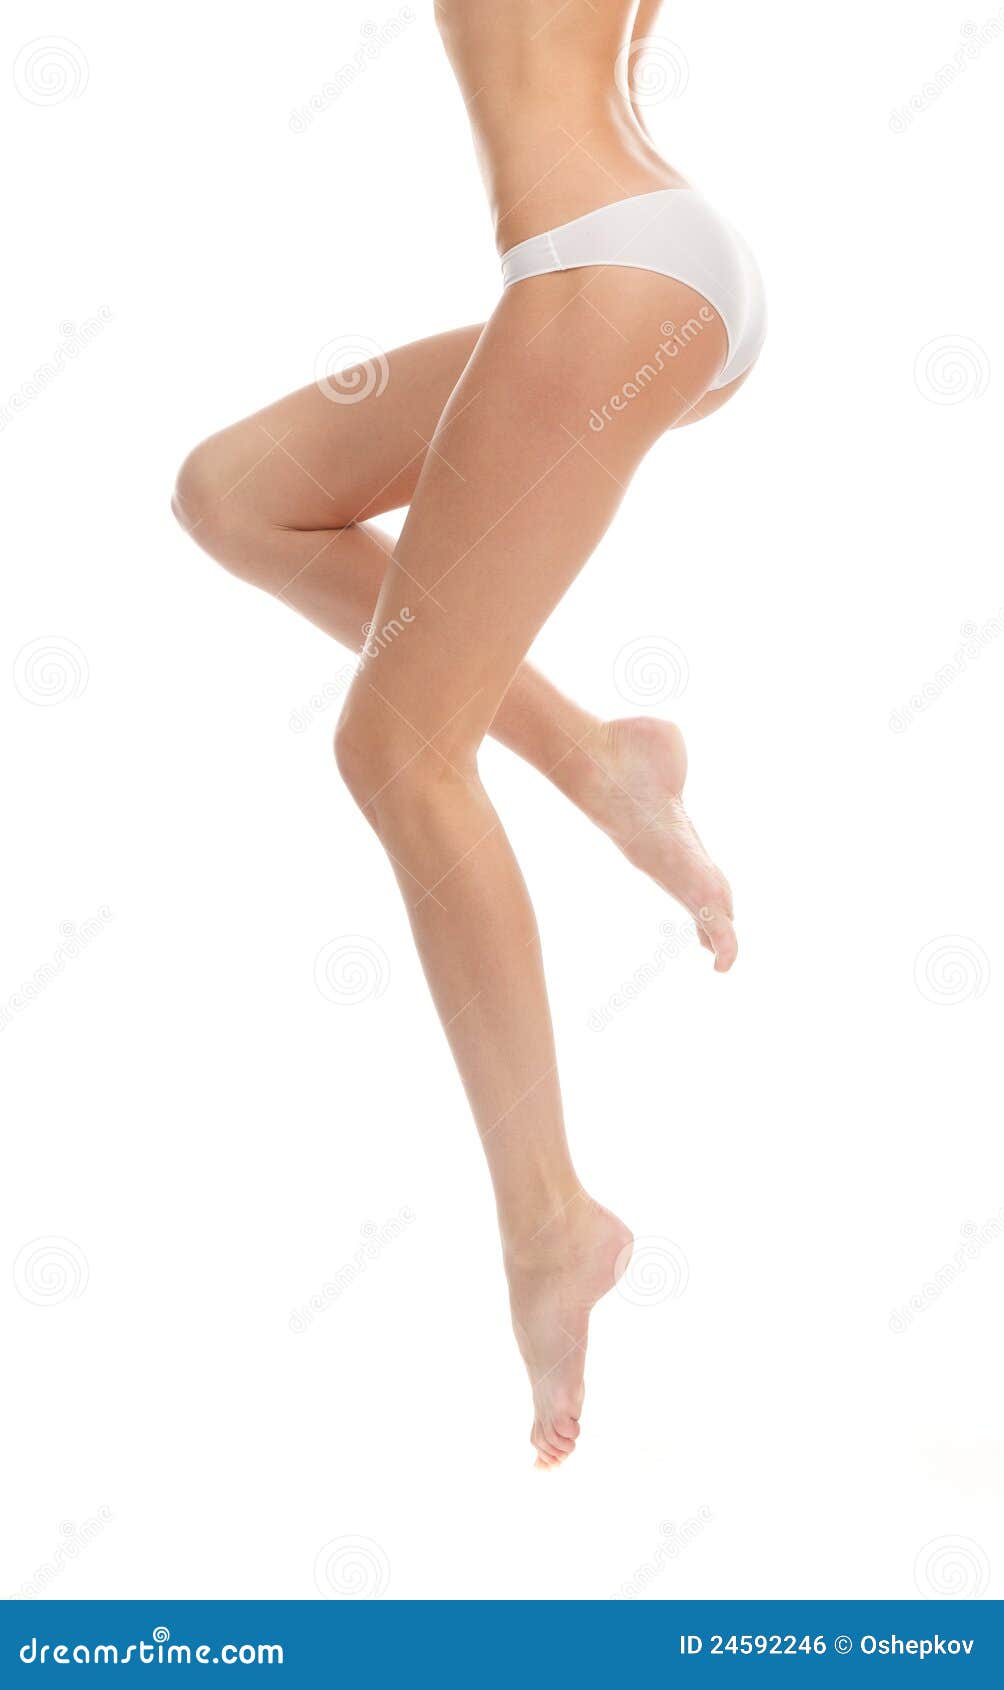 https://thumbs.dreamstime.com/z/beautiful-legs-girl-panties-white-backgrou-24592246.jpg